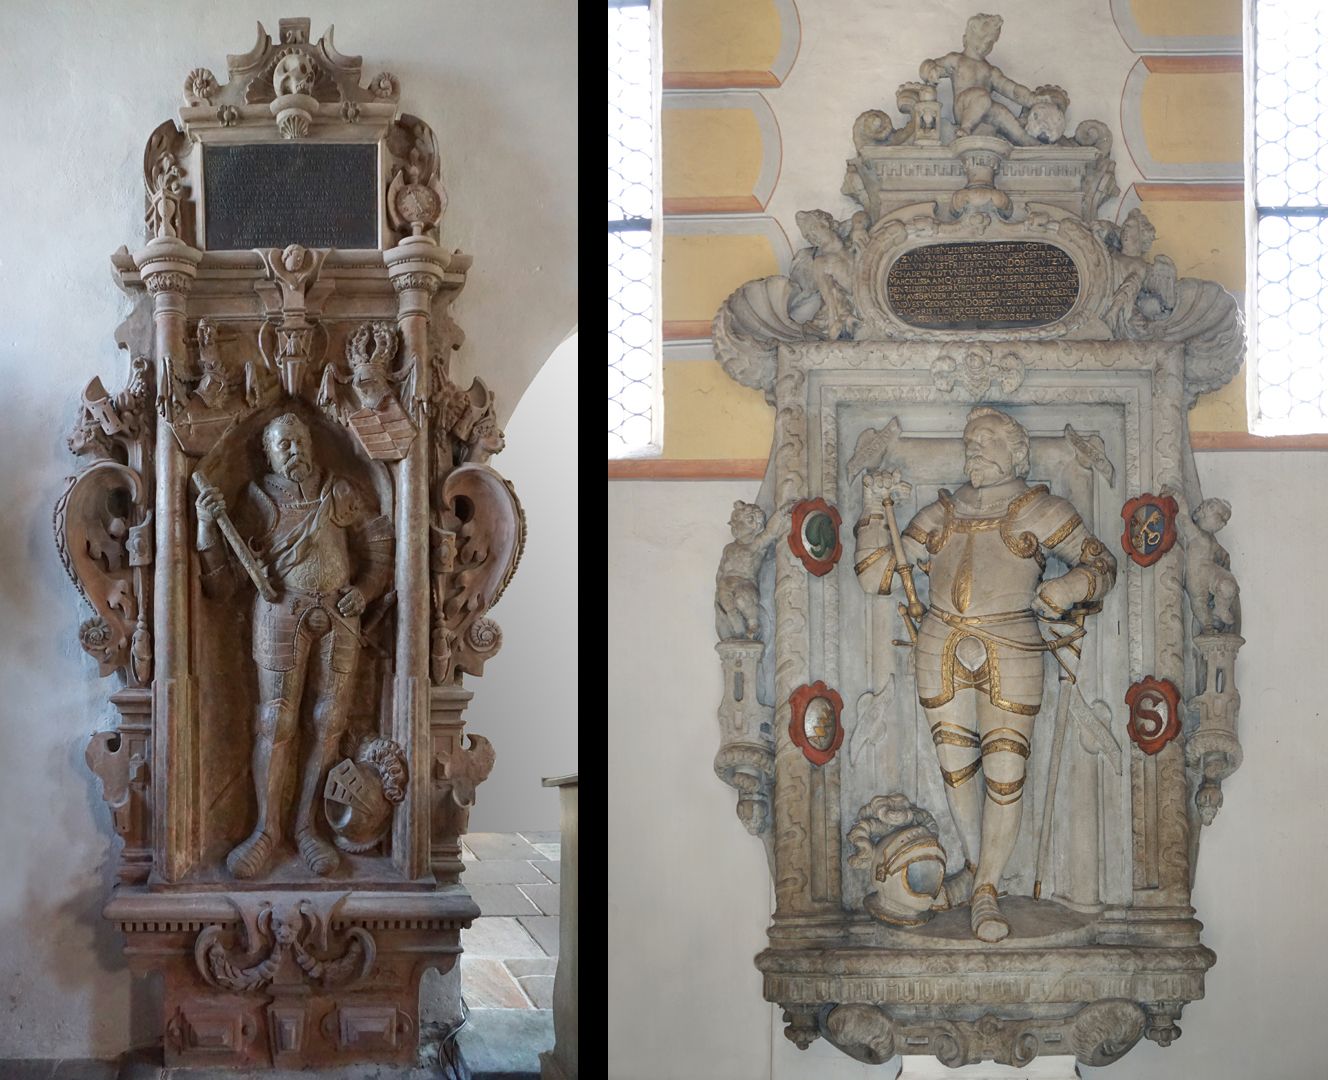 Epitaph für Hieronymus Kress von Kressenstein Vergleichsbild: links Grabmal Kressenstein 1596 / rechts Grabmal Dobschütz 1601 (Nürnberg, Johanniskirche)